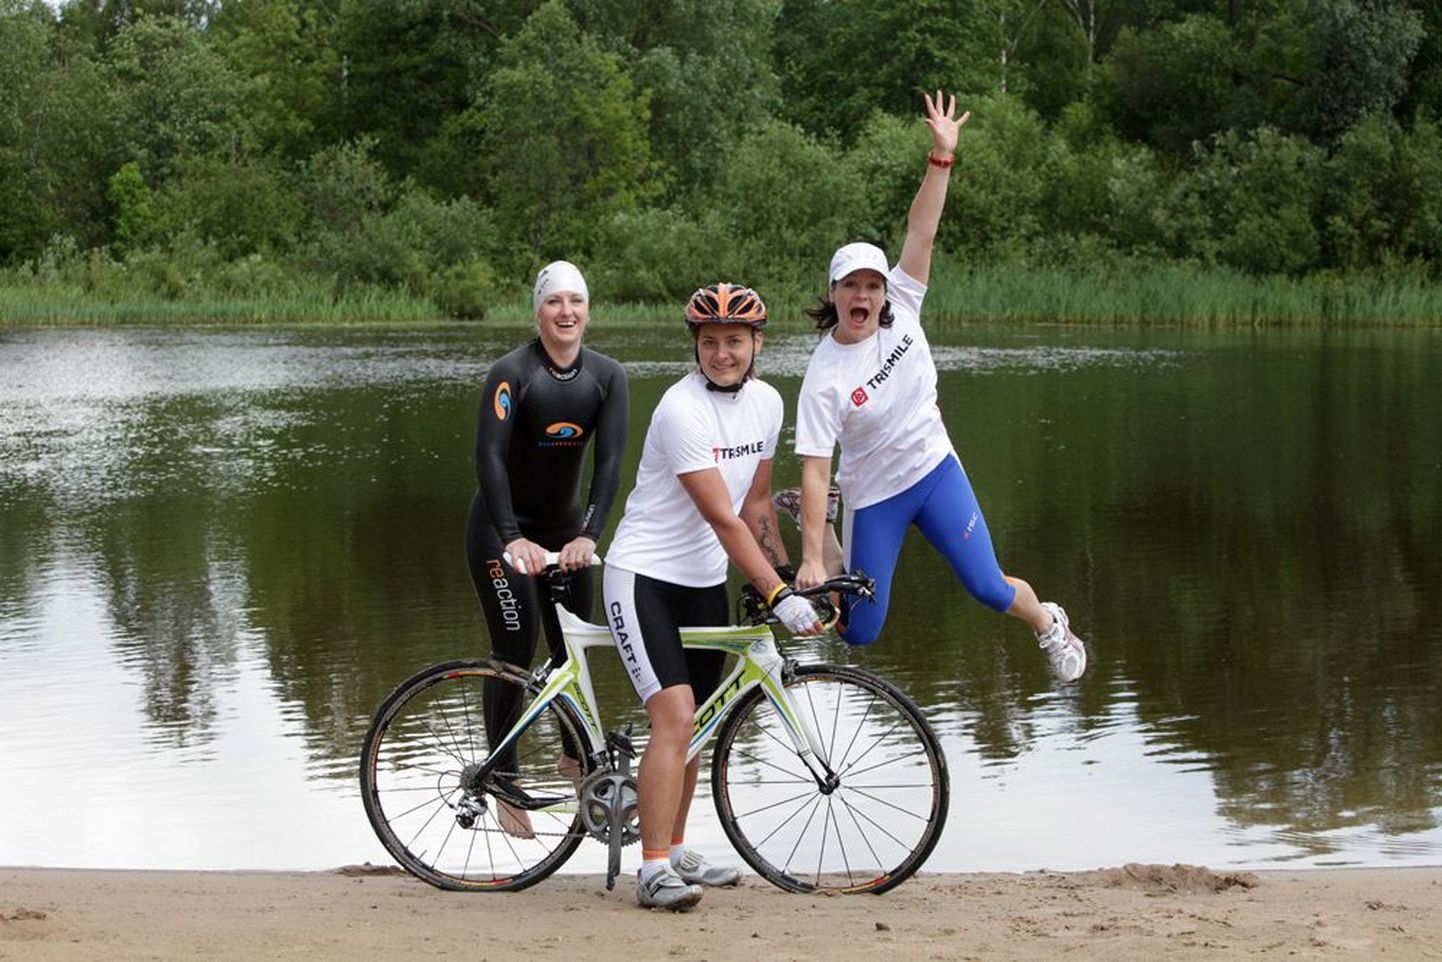 Айле Анья (слева), Хелен Веллау и Аннели Валге готовятся к соревнованию по триатлону Tristar, которое пройдет в первые выходные августа в Пюхаярве. Там женщинам придется проплыть один километр в озере Пюхаярв, проехать на велосипеде сто километров и пробежать десять километров.